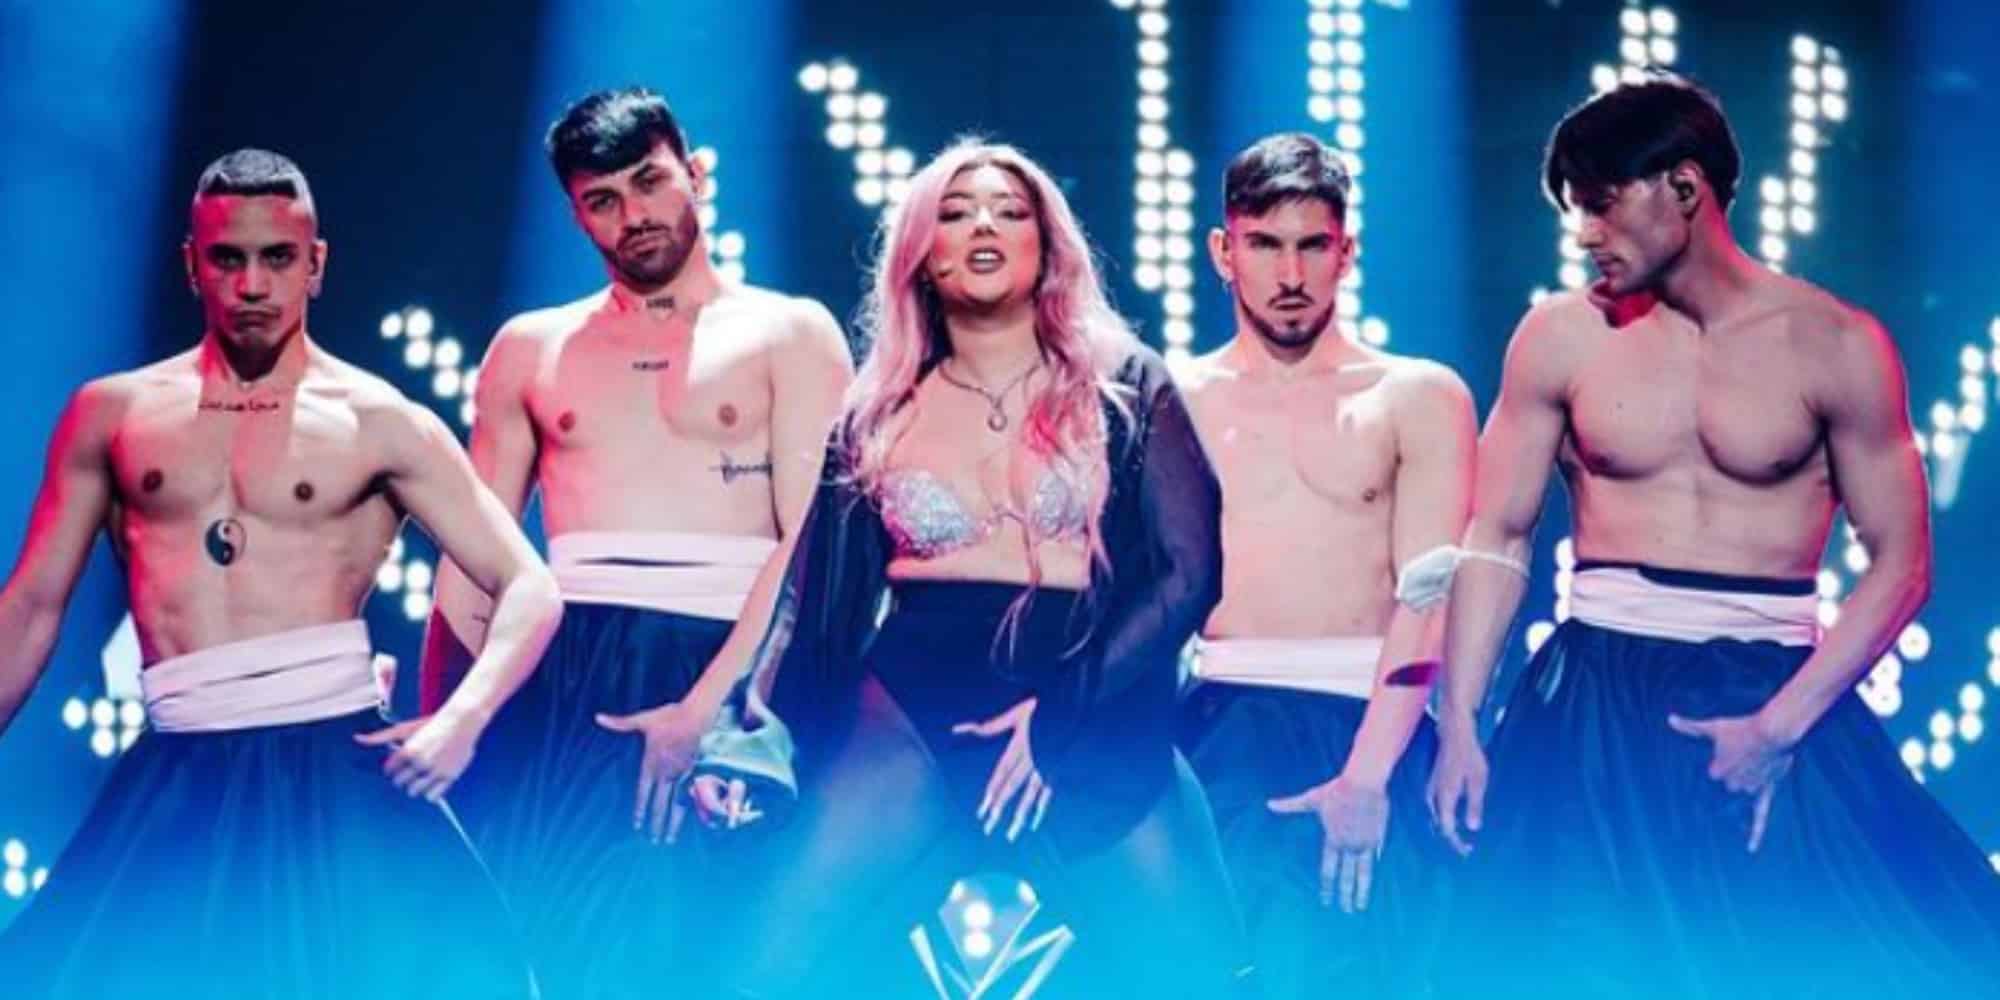 Σάλος στη Eurovision: Κατέβασαν φωτογραφίες της Αλβανίας και ζήτησαν αλλαγή στην χορογραφία (εικόνες & βίντεο)